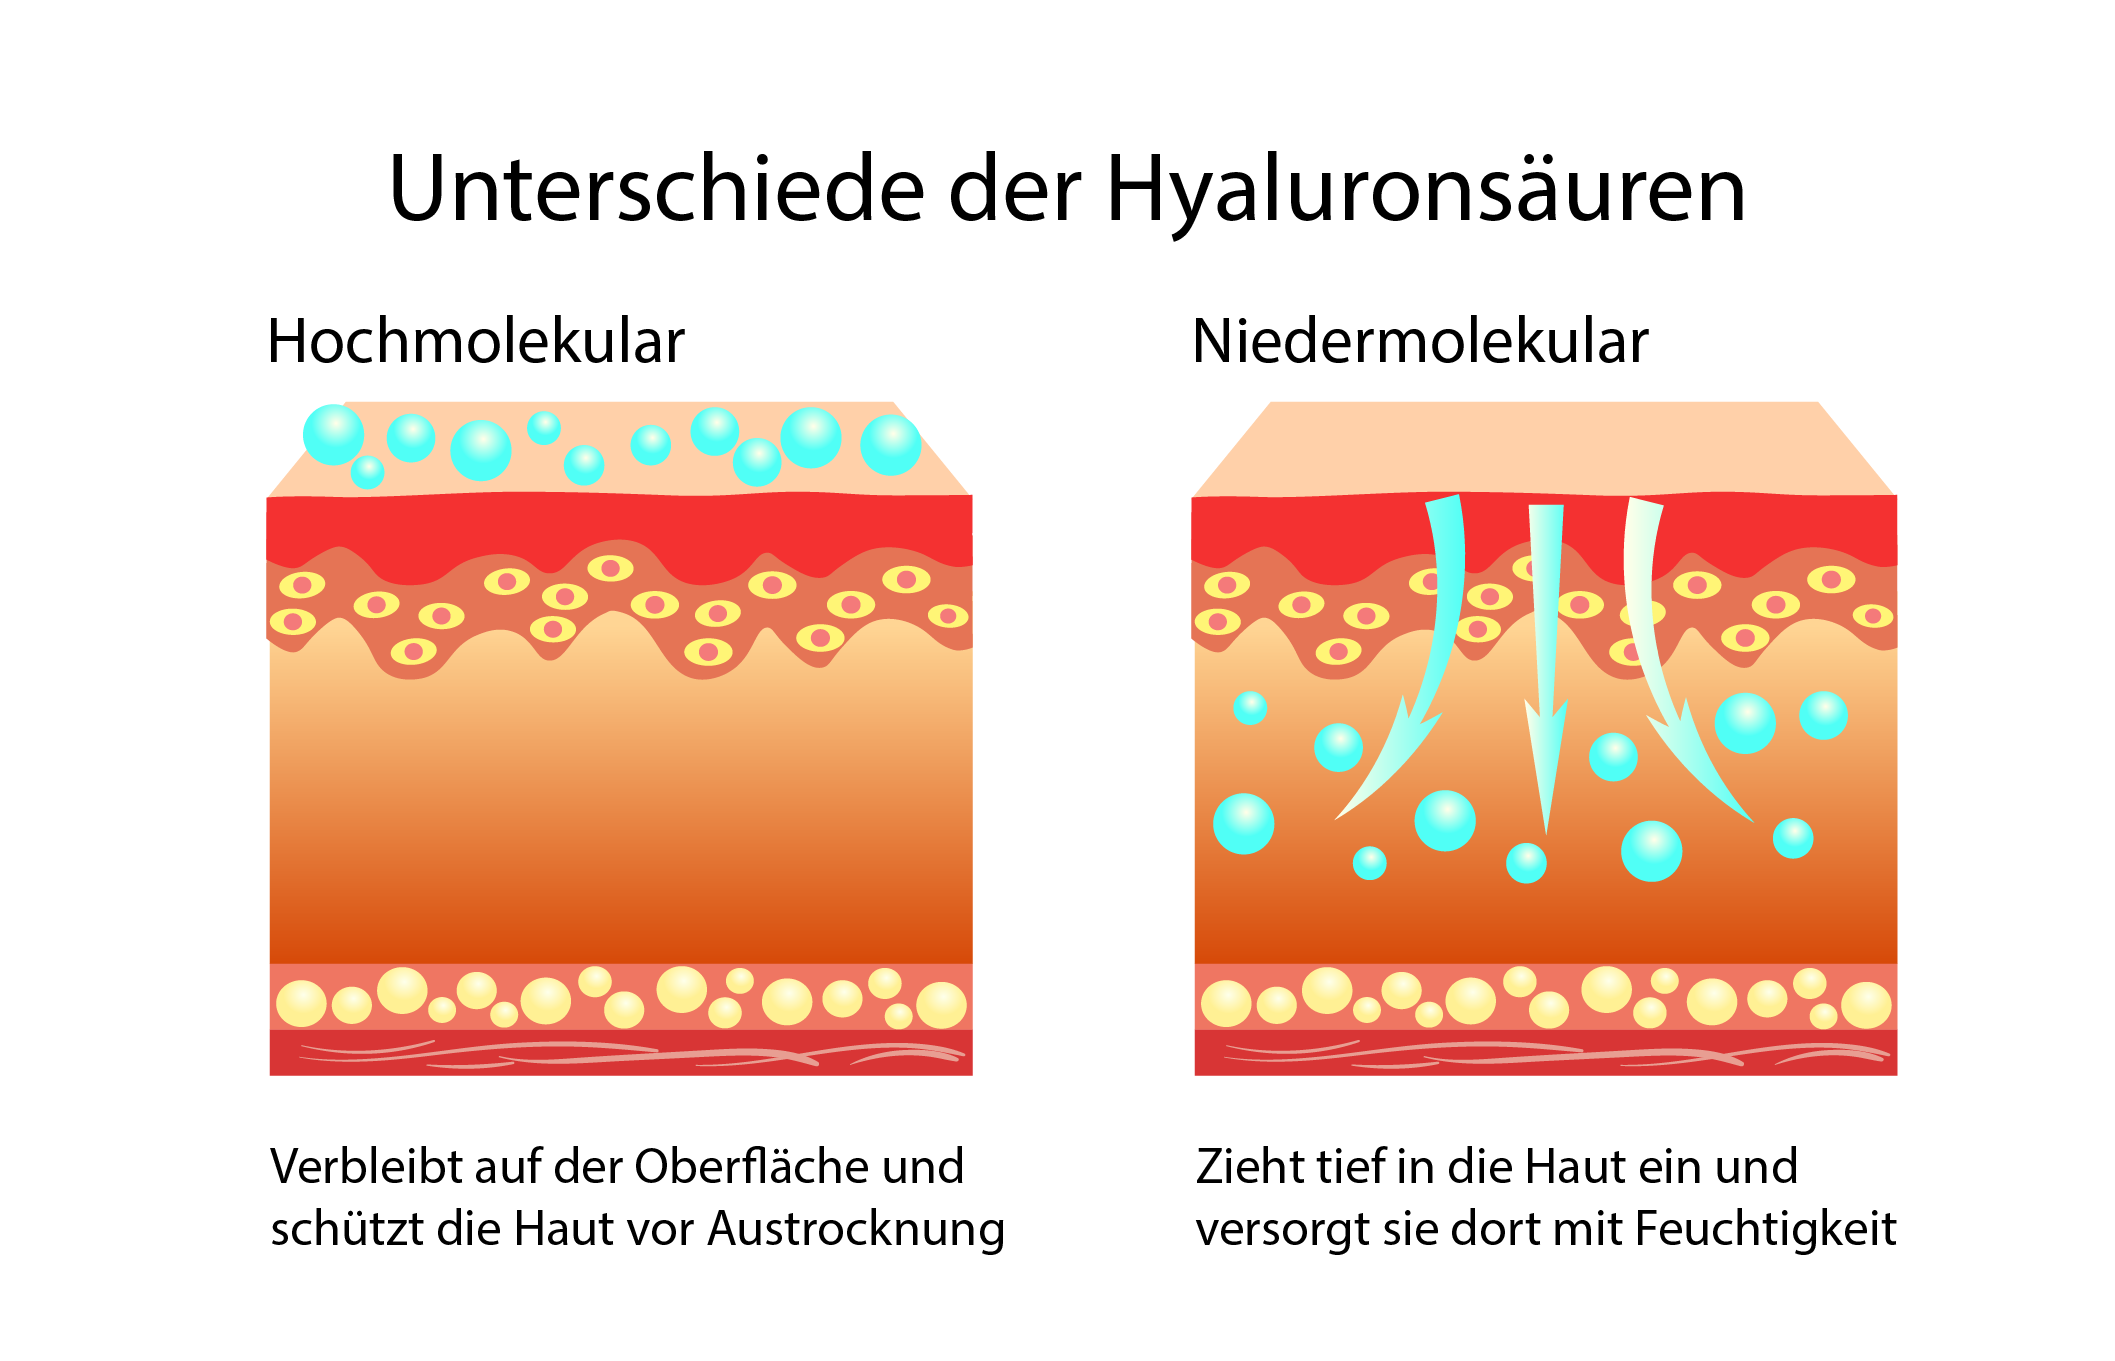 Nieder und Hochmolekulare Hyaluronsäure - Unterschiede